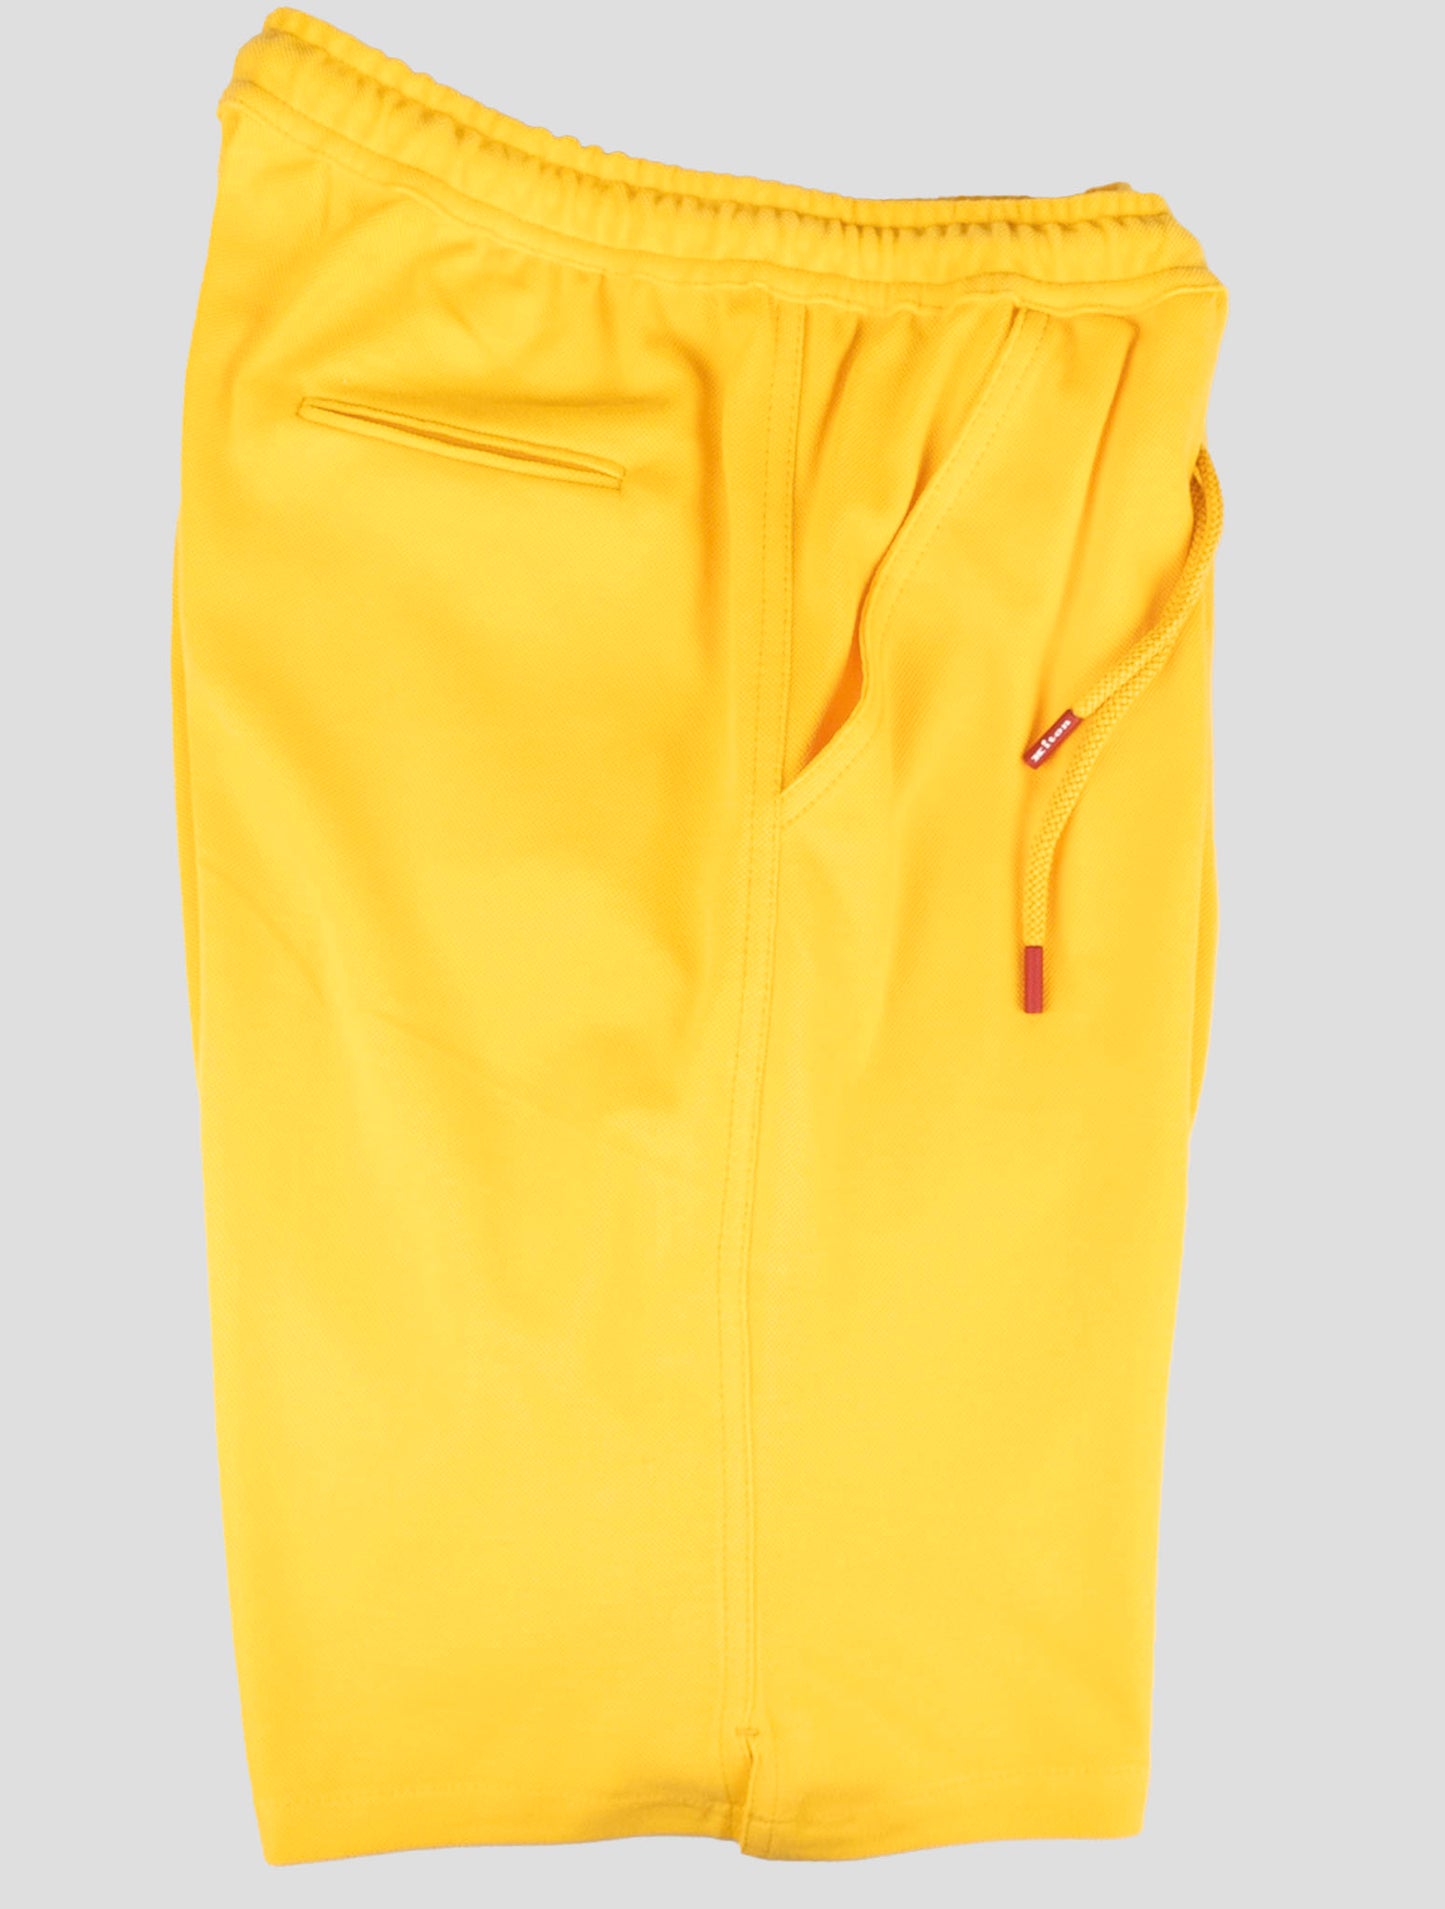 Traje a juego Kiton-Azul y blanco Mariano y amarillo pantalones cortos chándal